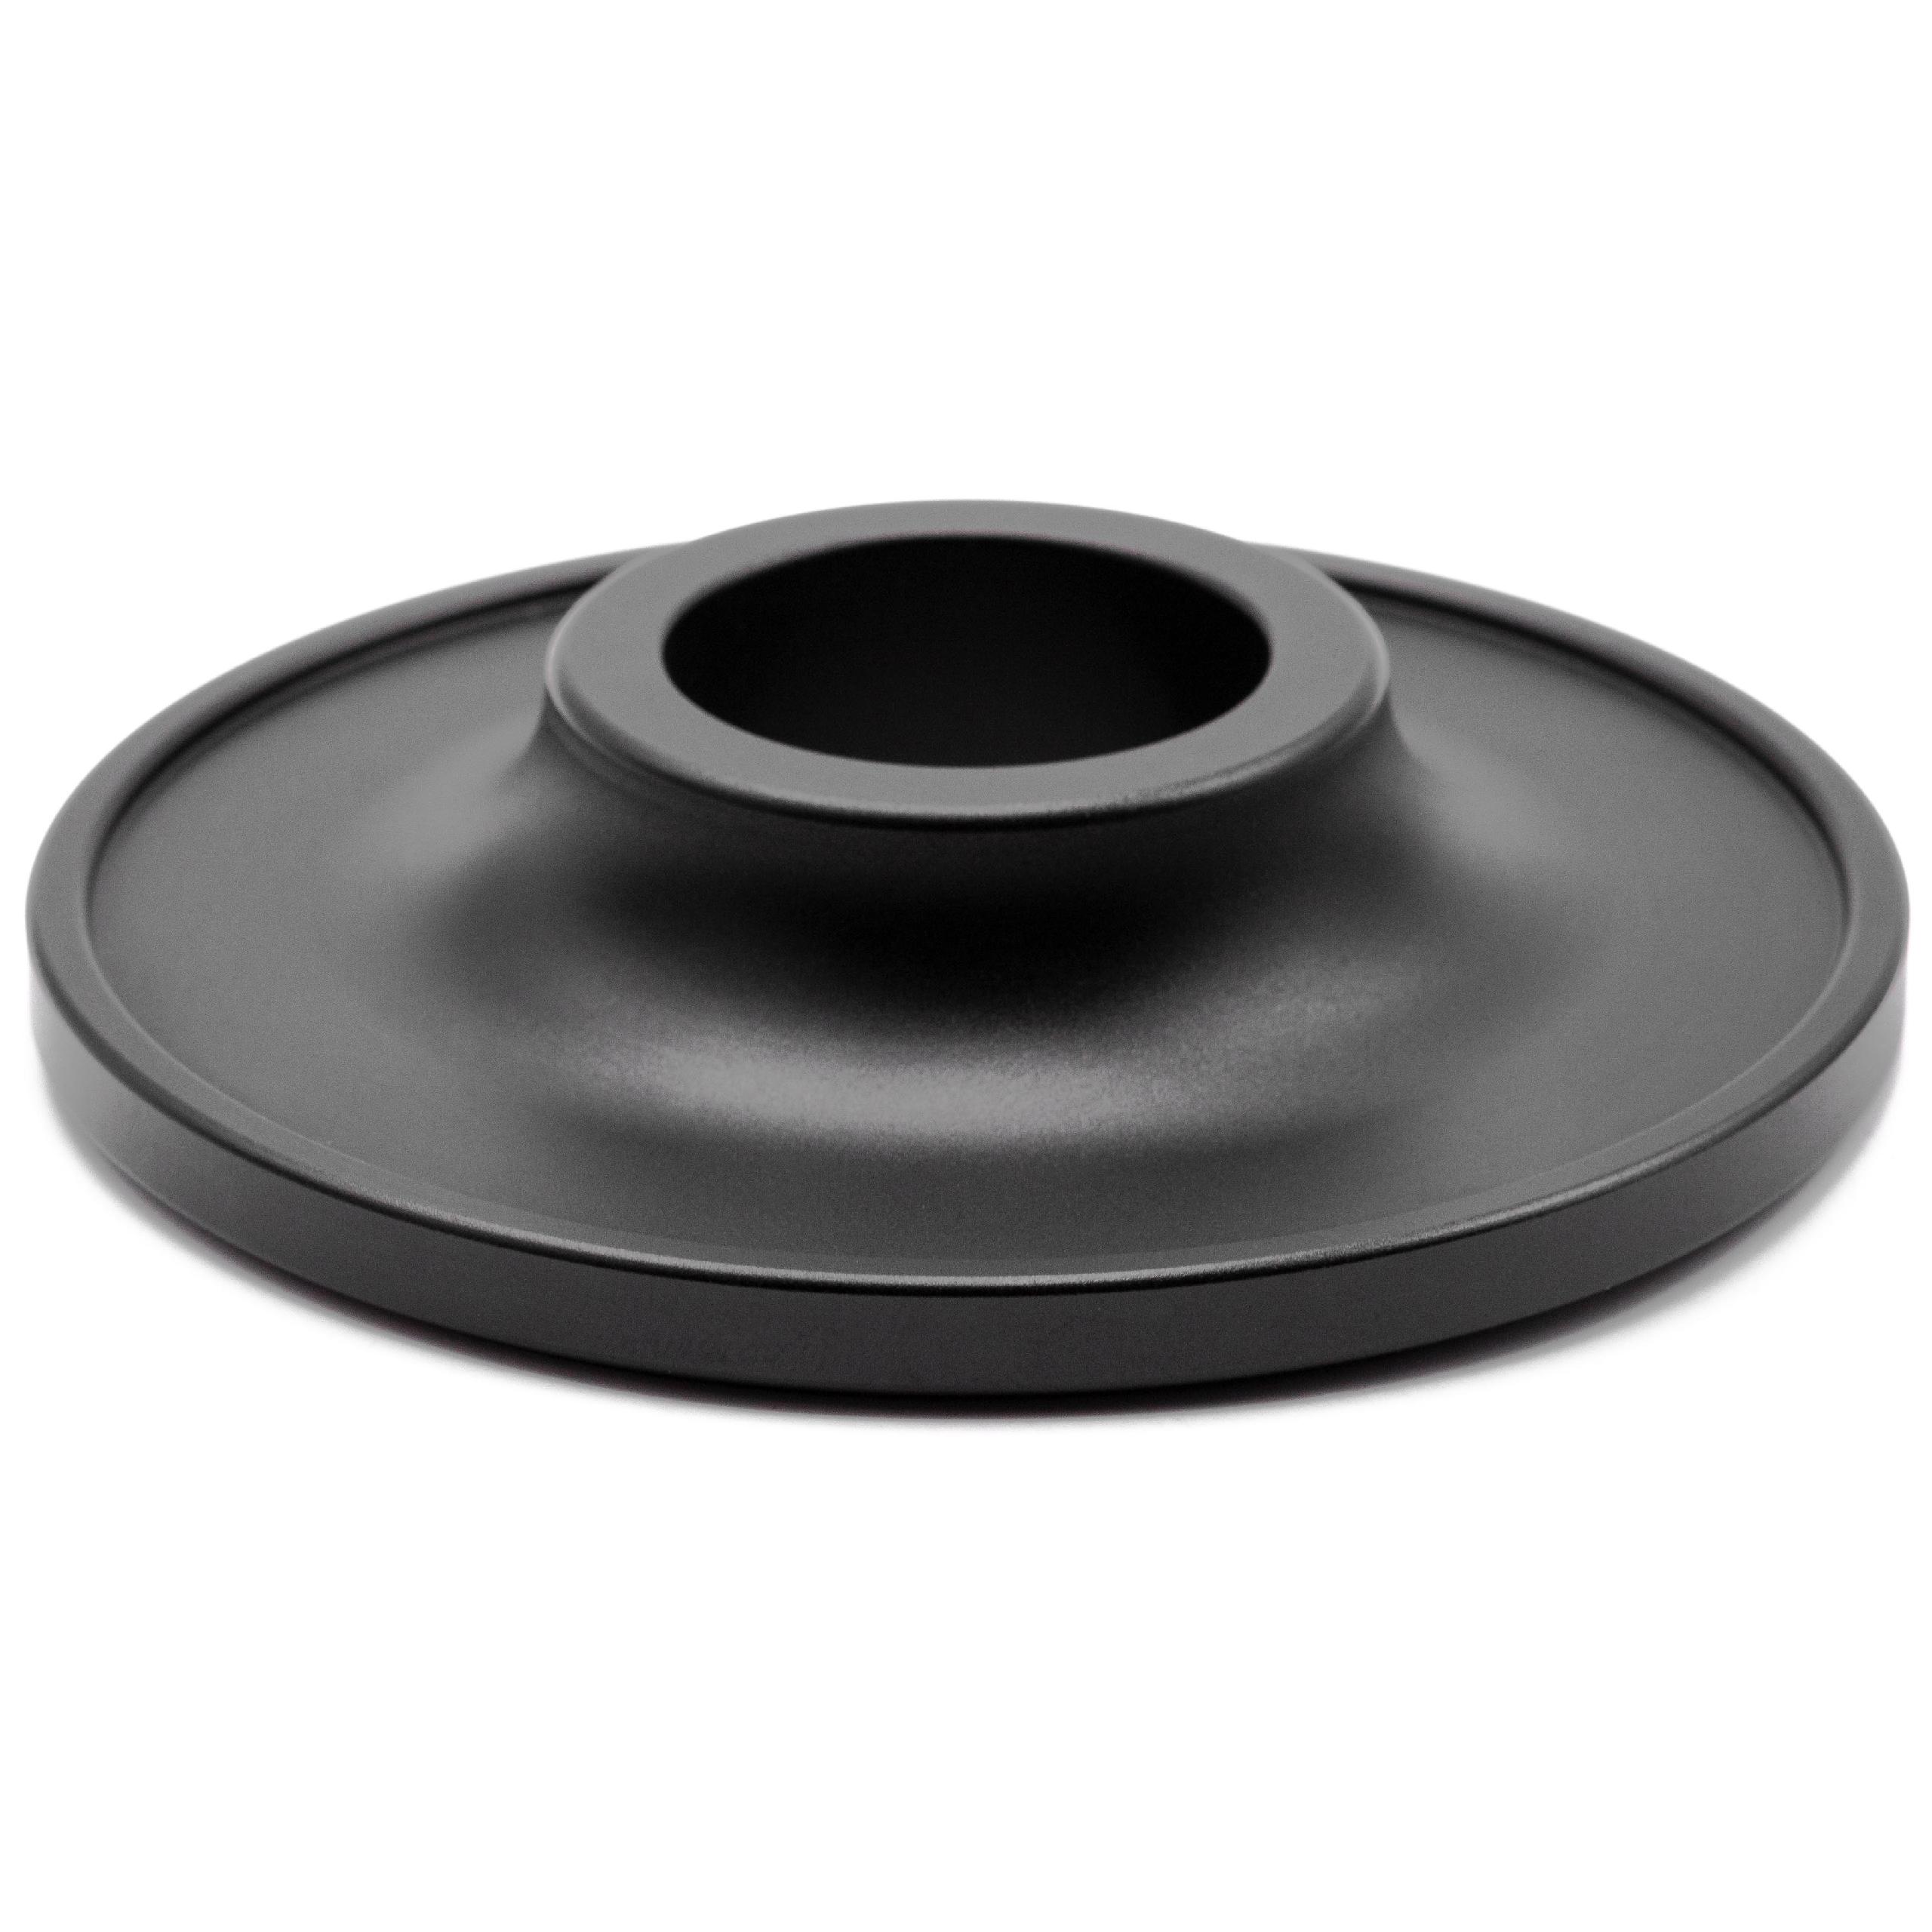 vhbw Socle pour support d'enceinte base pour haut-parleur intelligent en aluminium, noir